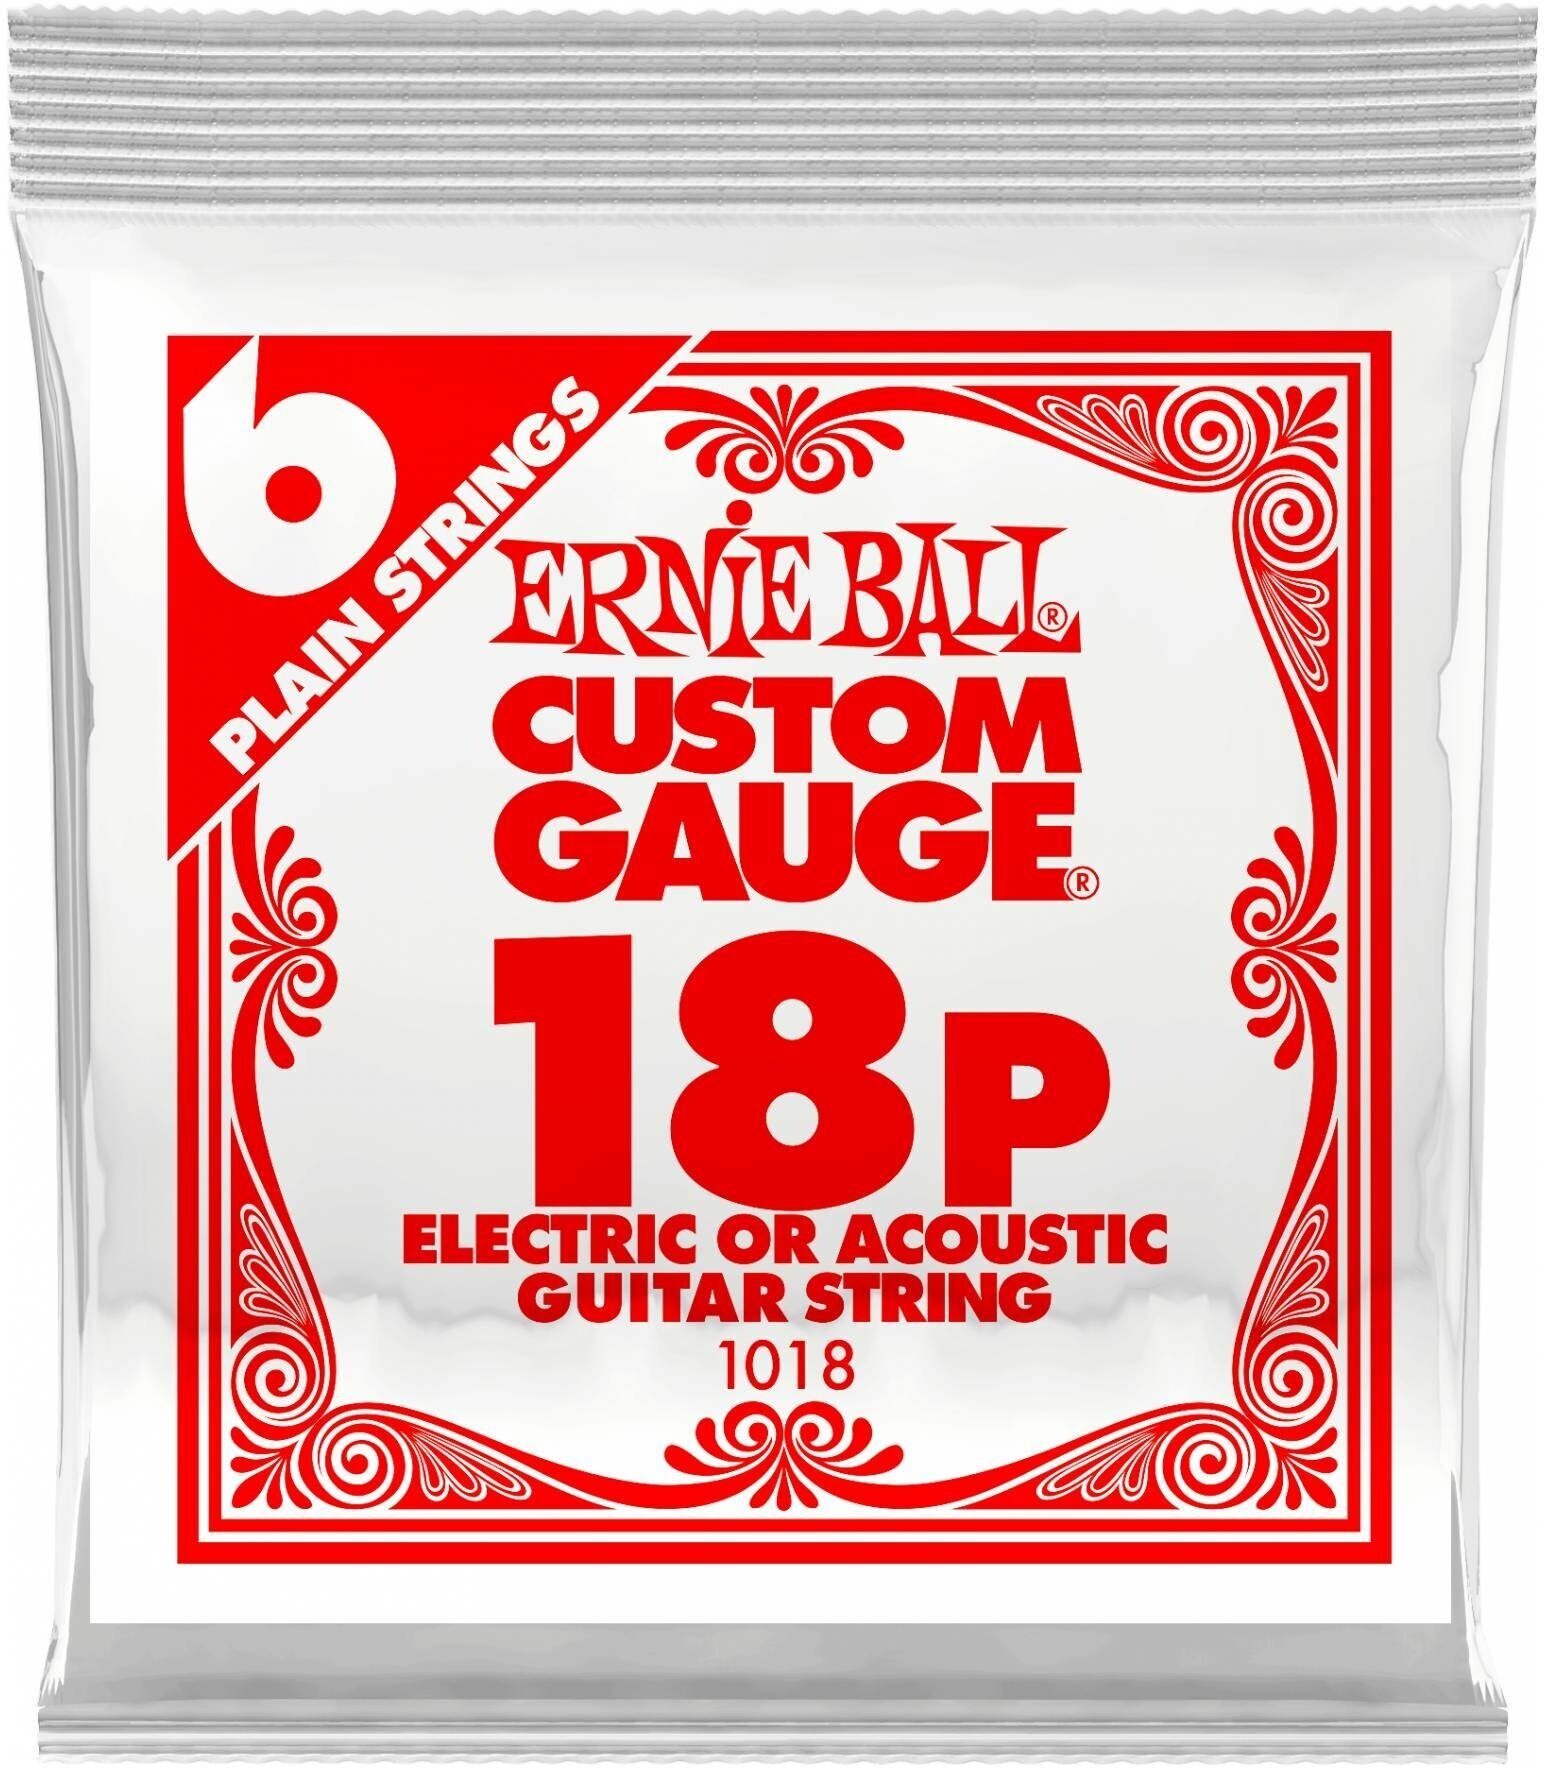 ERNIE BALL 1018 (.018) одна струна для акустической гитары или электрогитары